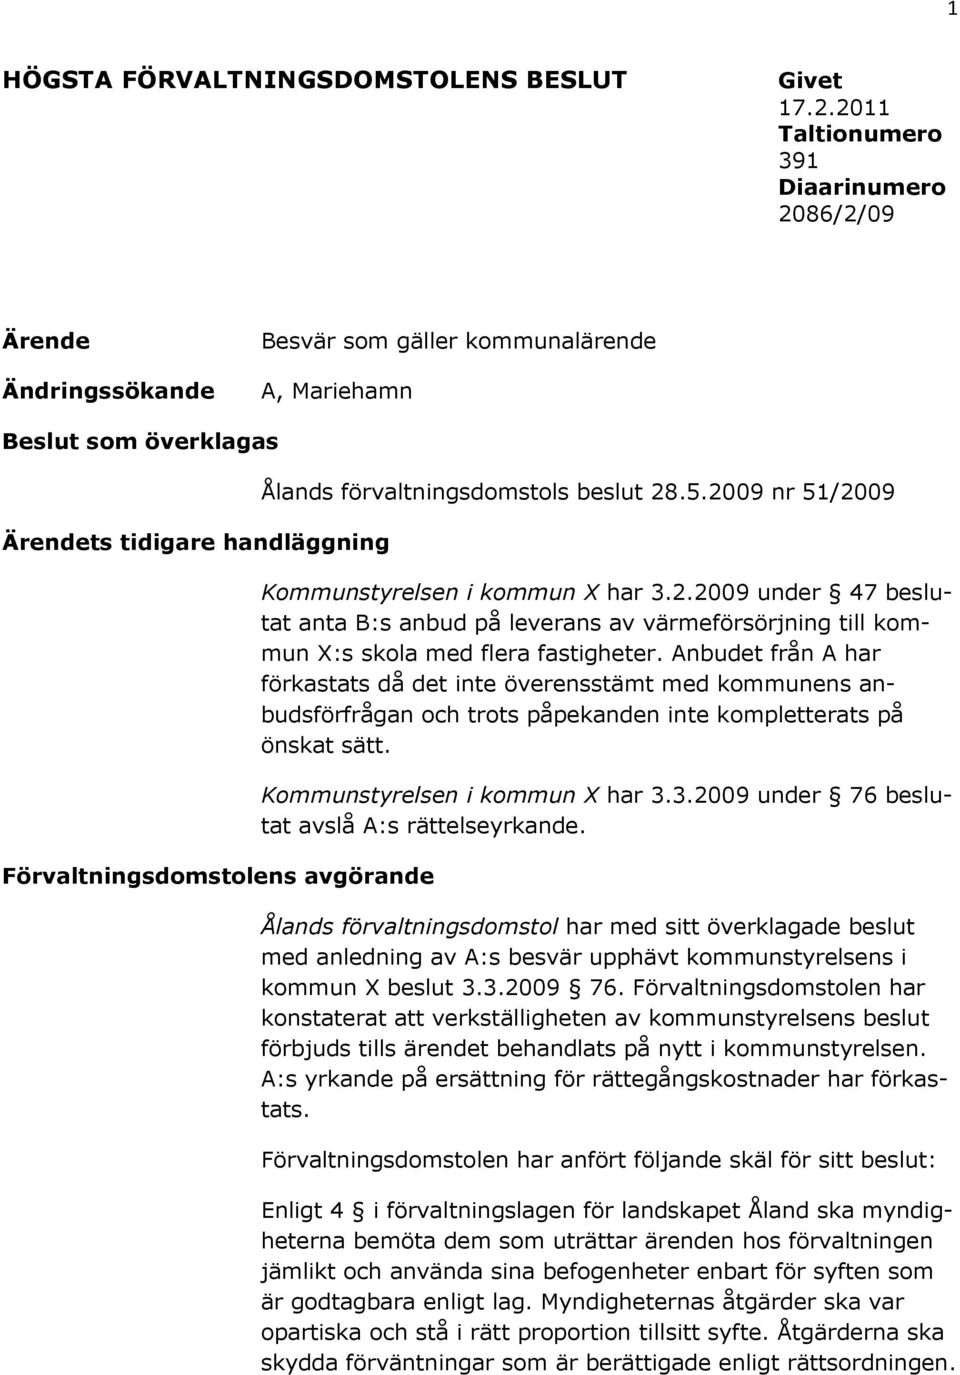 Ålands förvaltningsdomstols beslut 28.5.2009 nr 51/2009 Kommunstyrelsen i kommun X har 3.2.2009 under 47 beslutat anta B:s anbud på leverans av värmeförsörjning till kommun X:s skola med flera fastigheter.